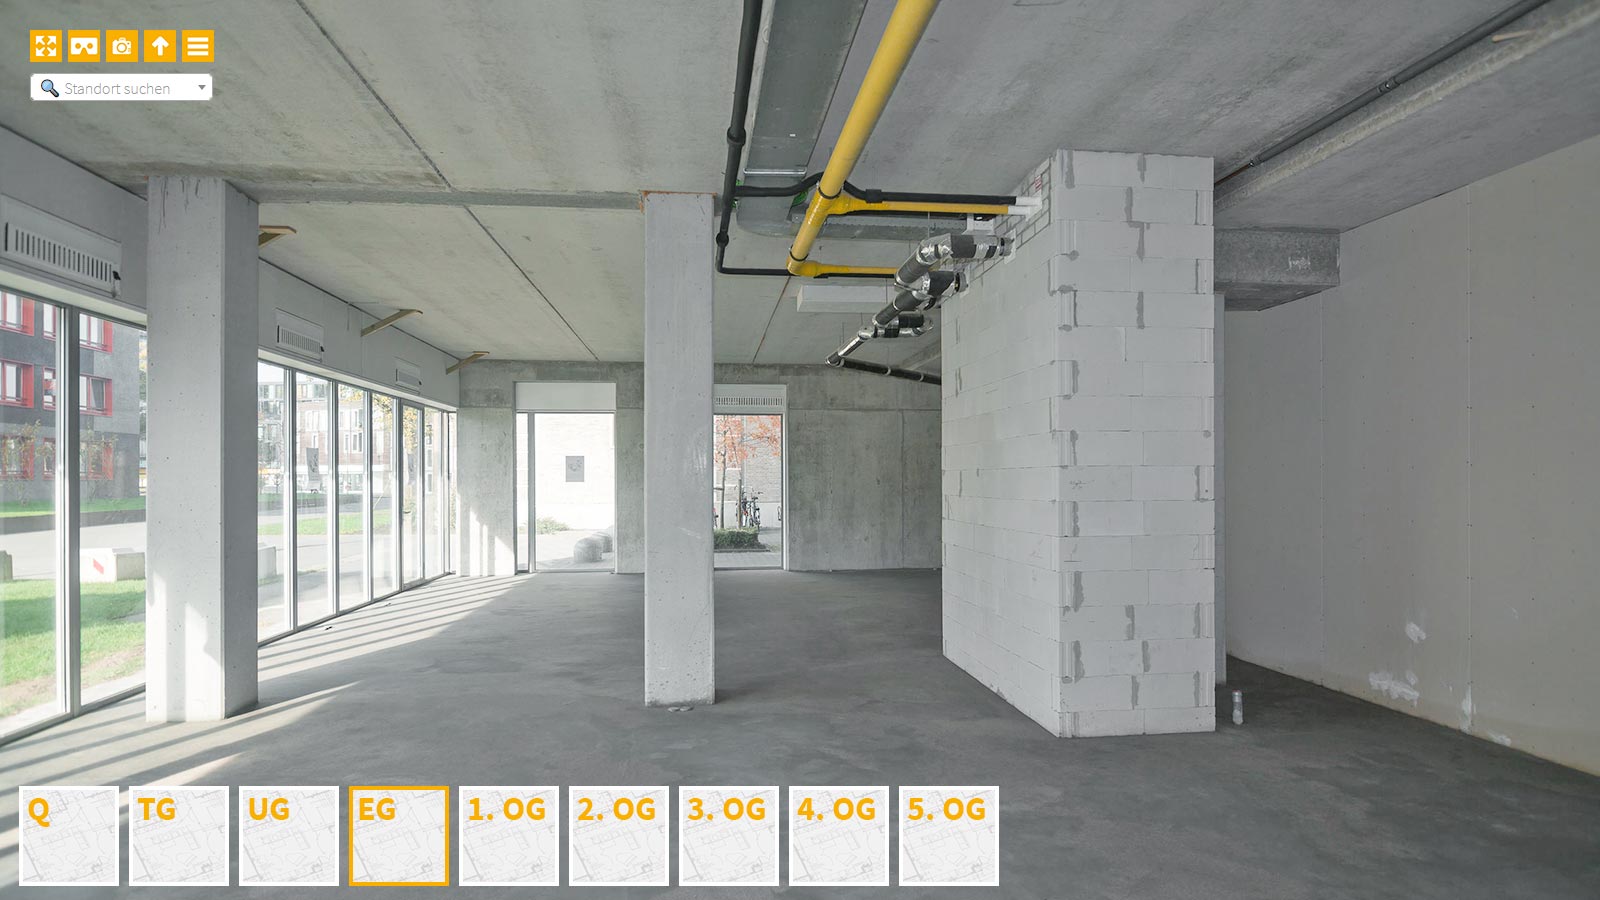 Baudokumentation 360 Grad bei gestörten Projekten in 


	


	


	


	


	


	


	


	


	


	Reutlingen









, Bilddokumentation als virtueller Rundgang